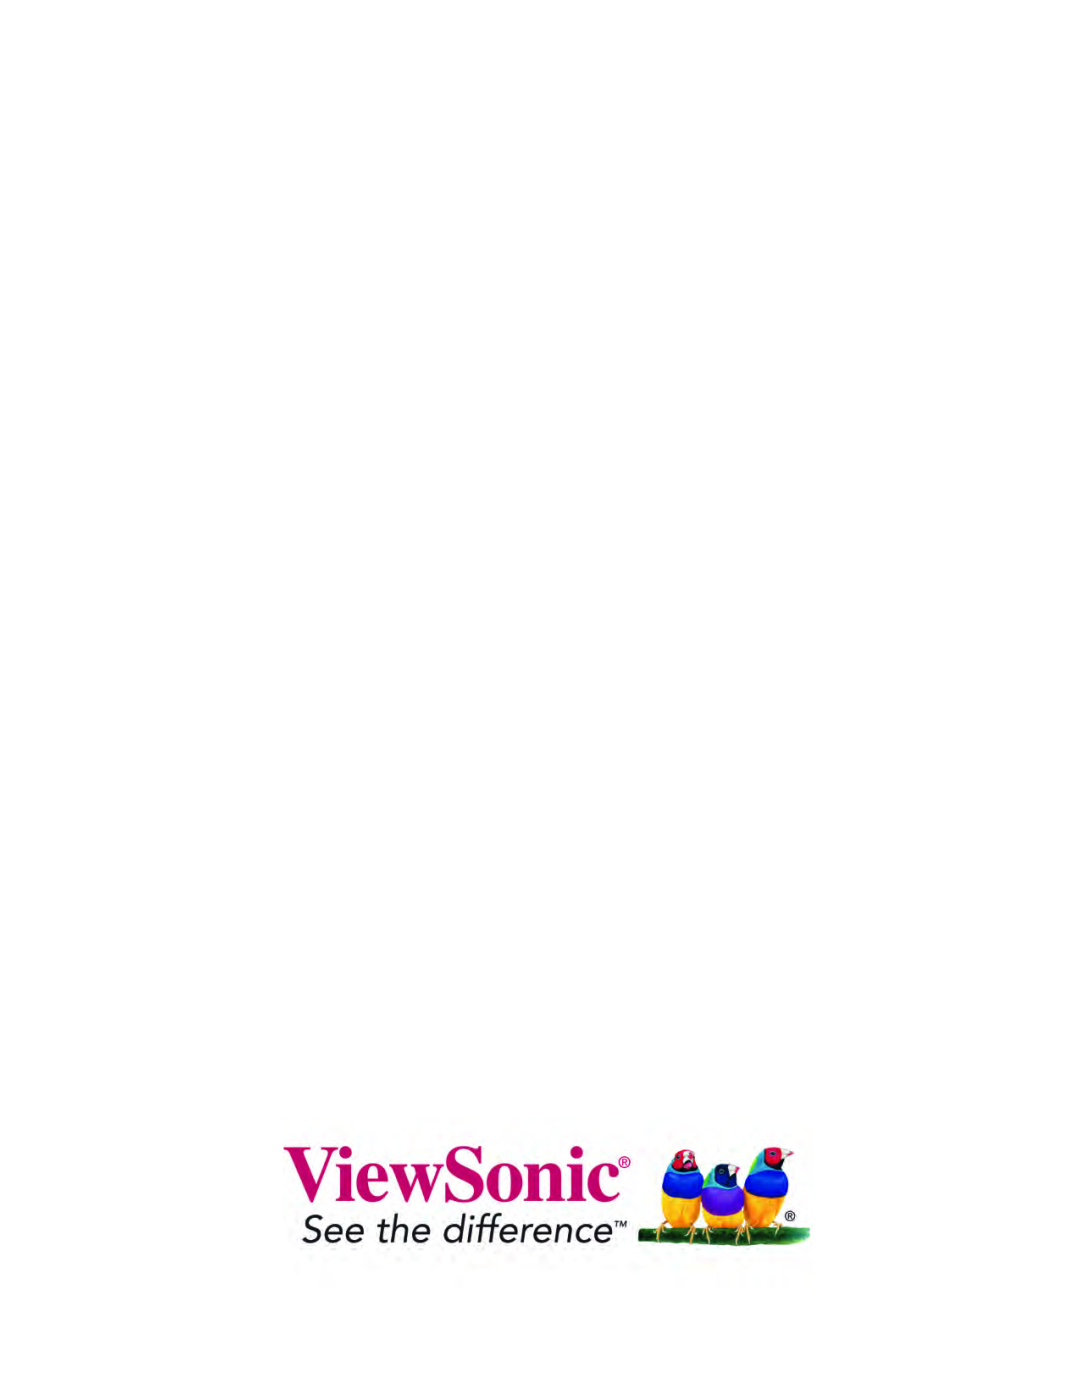 ViewSonic WPG-150 manual 